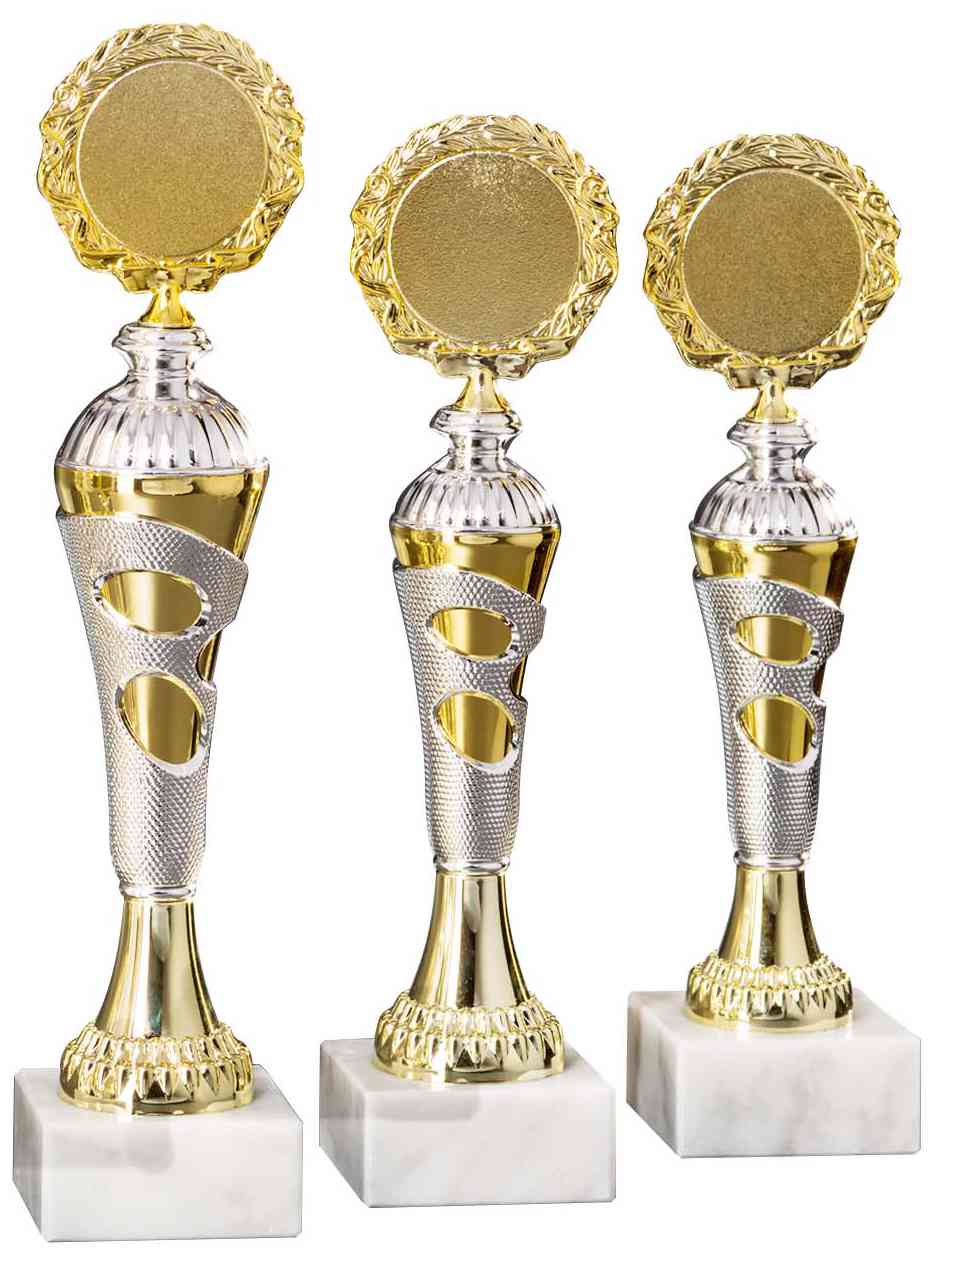 Drei goldene POMEKI-Pokale Bad Kreuznach 3-er Pokalserie 255 mm – 290 mm PK754690-3-E50 mit kreisförmigen Emblemen und komplizierten Details auf einem weißen Hintergrund.